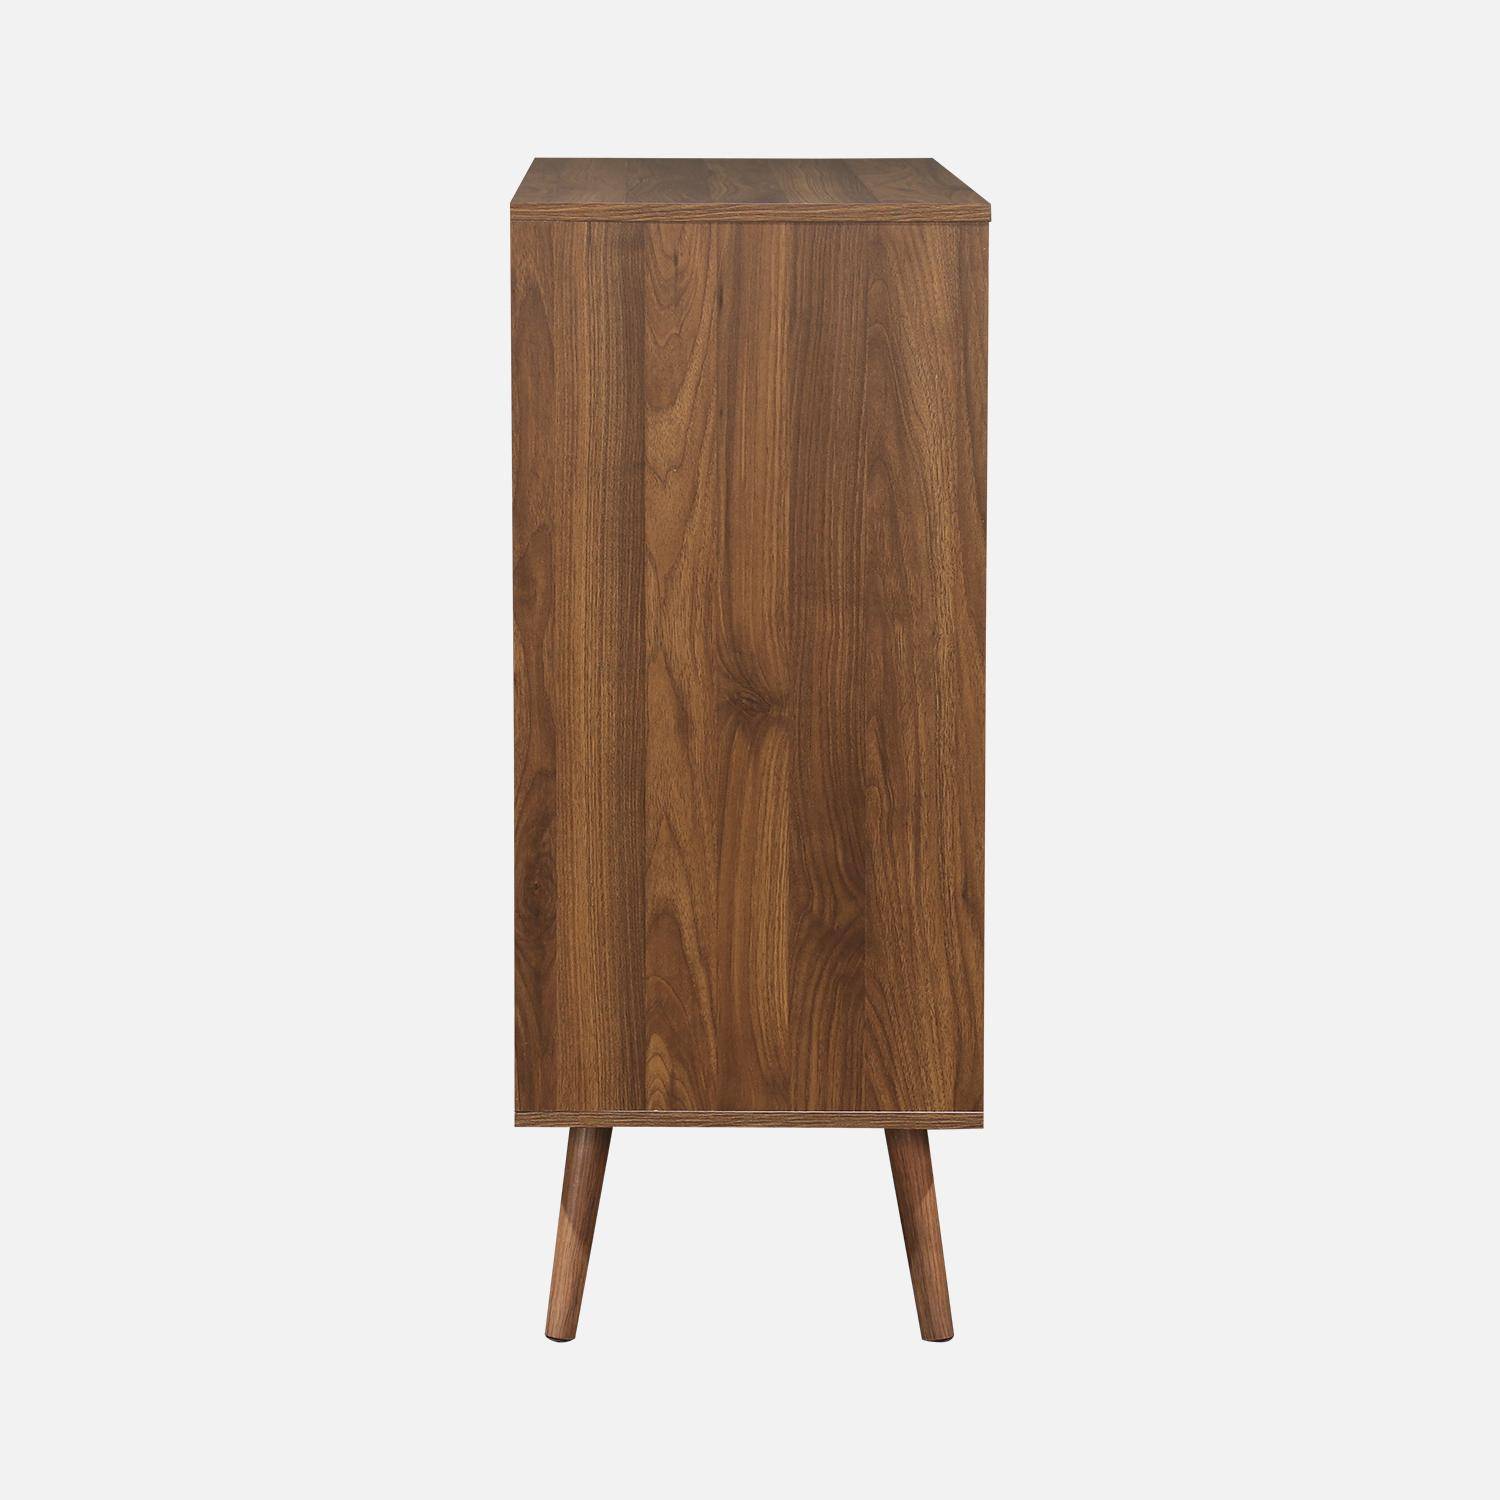 Walnut wood-effect 4-drawer chest, 80x40x99cm, Nepal, 4 drawers Photo6